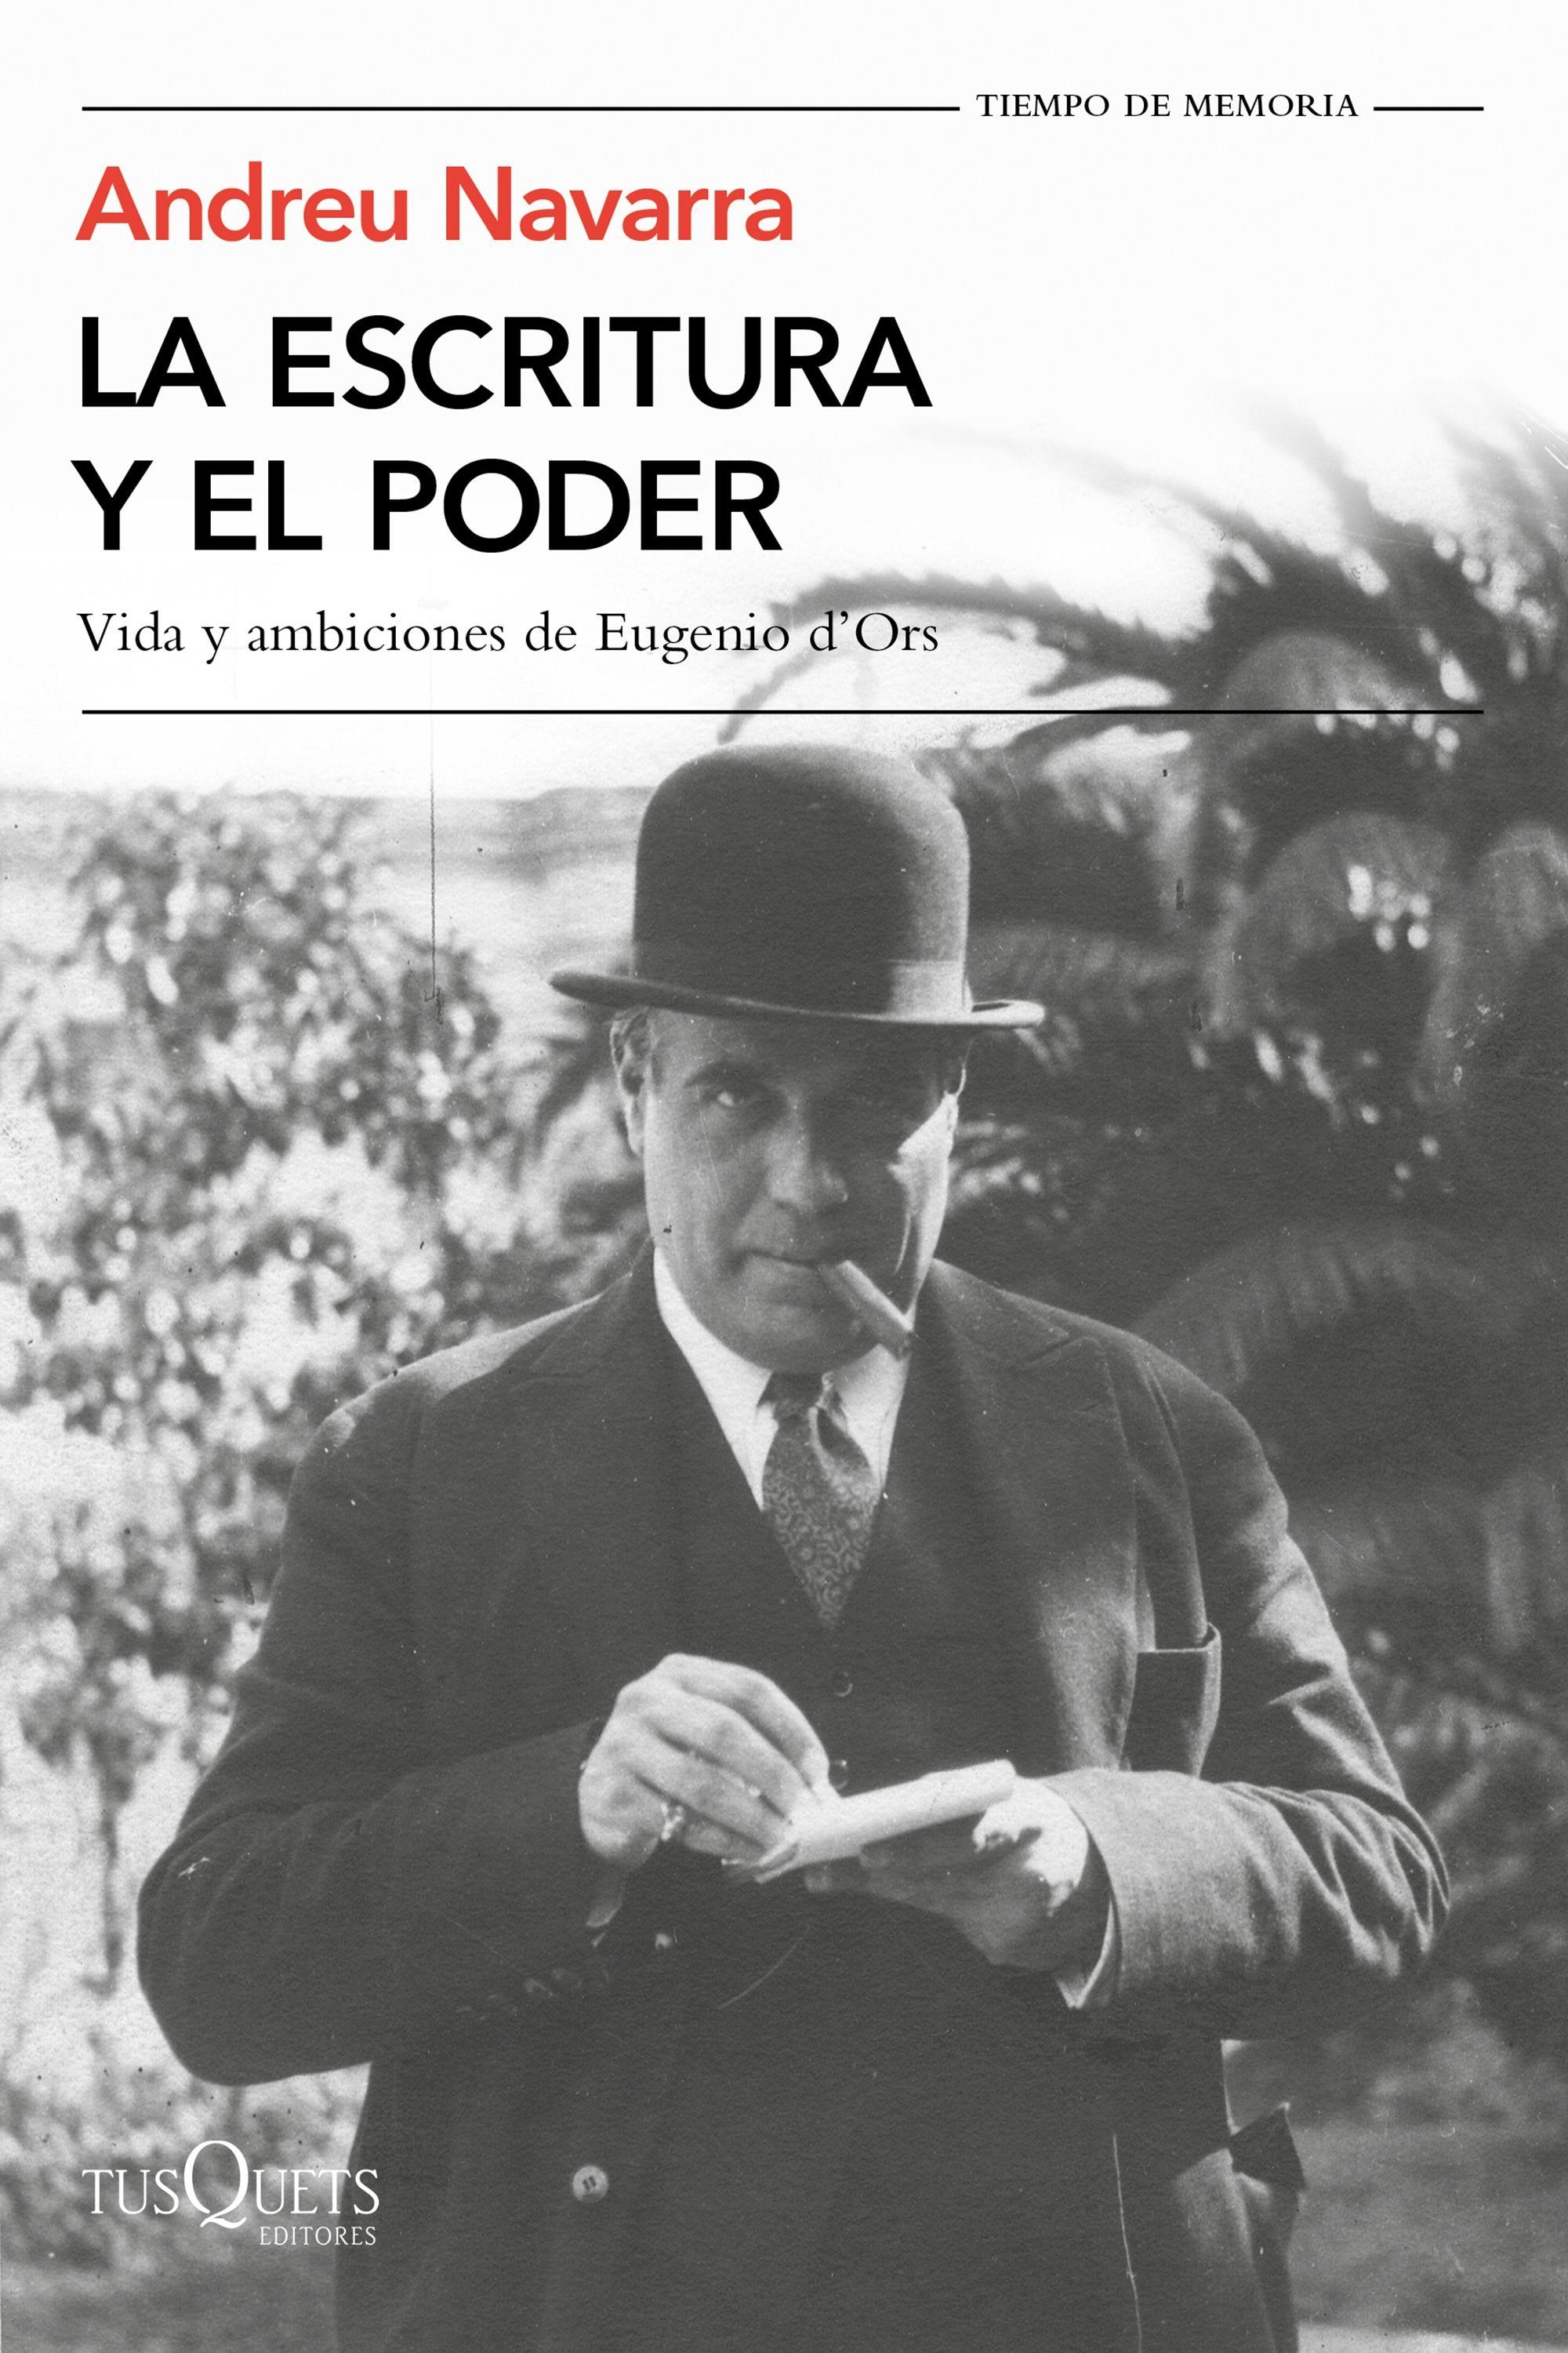 La escritura y el poder "Vida y ambiciones de Eugenio D'Ors"